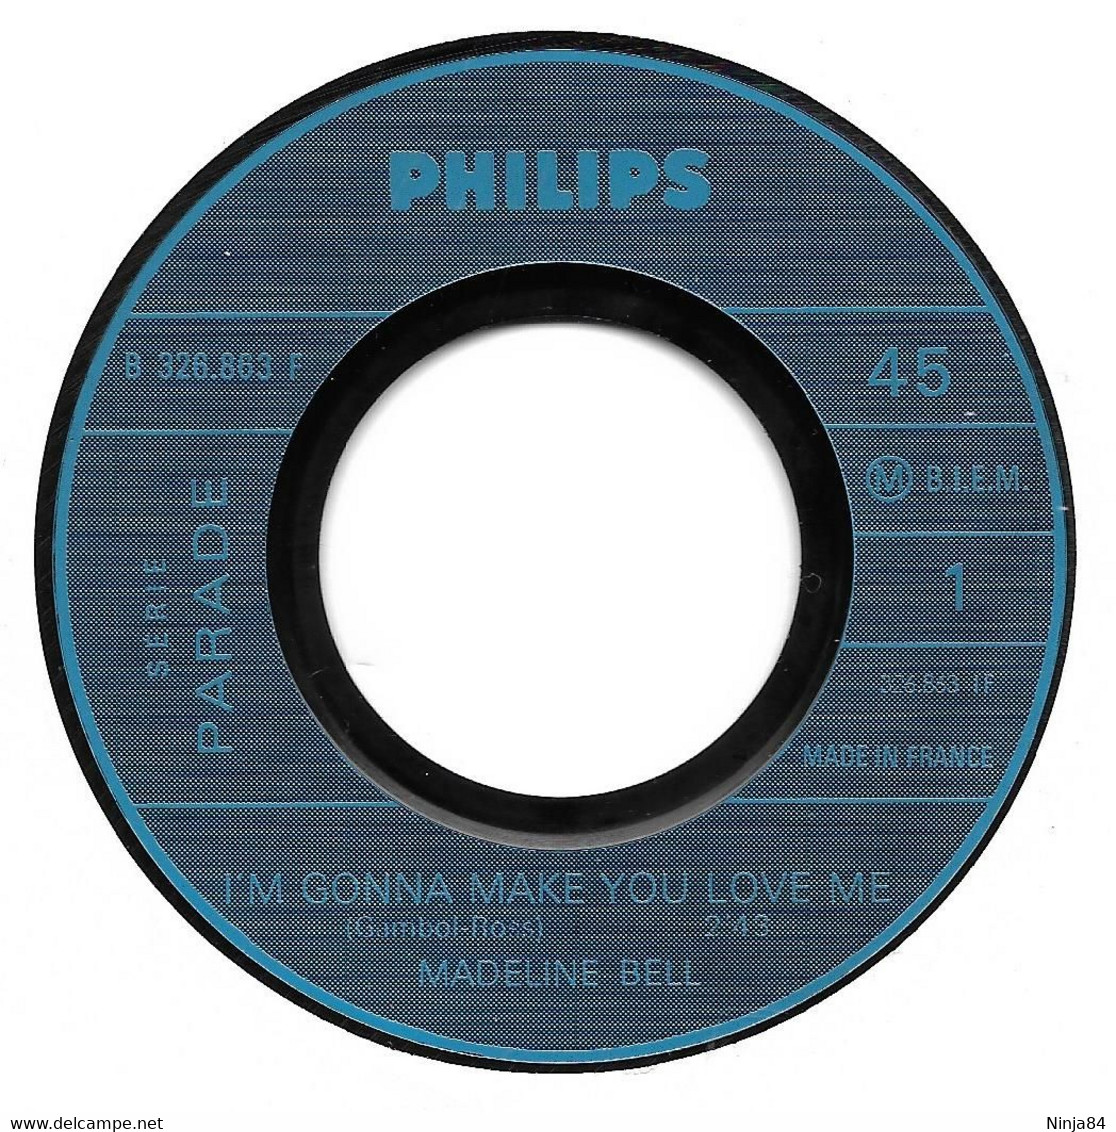 SP 45 RPM (7)  Madeline Bell  "  "I'm Gonna Make You Love Me  " - Soul - R&B